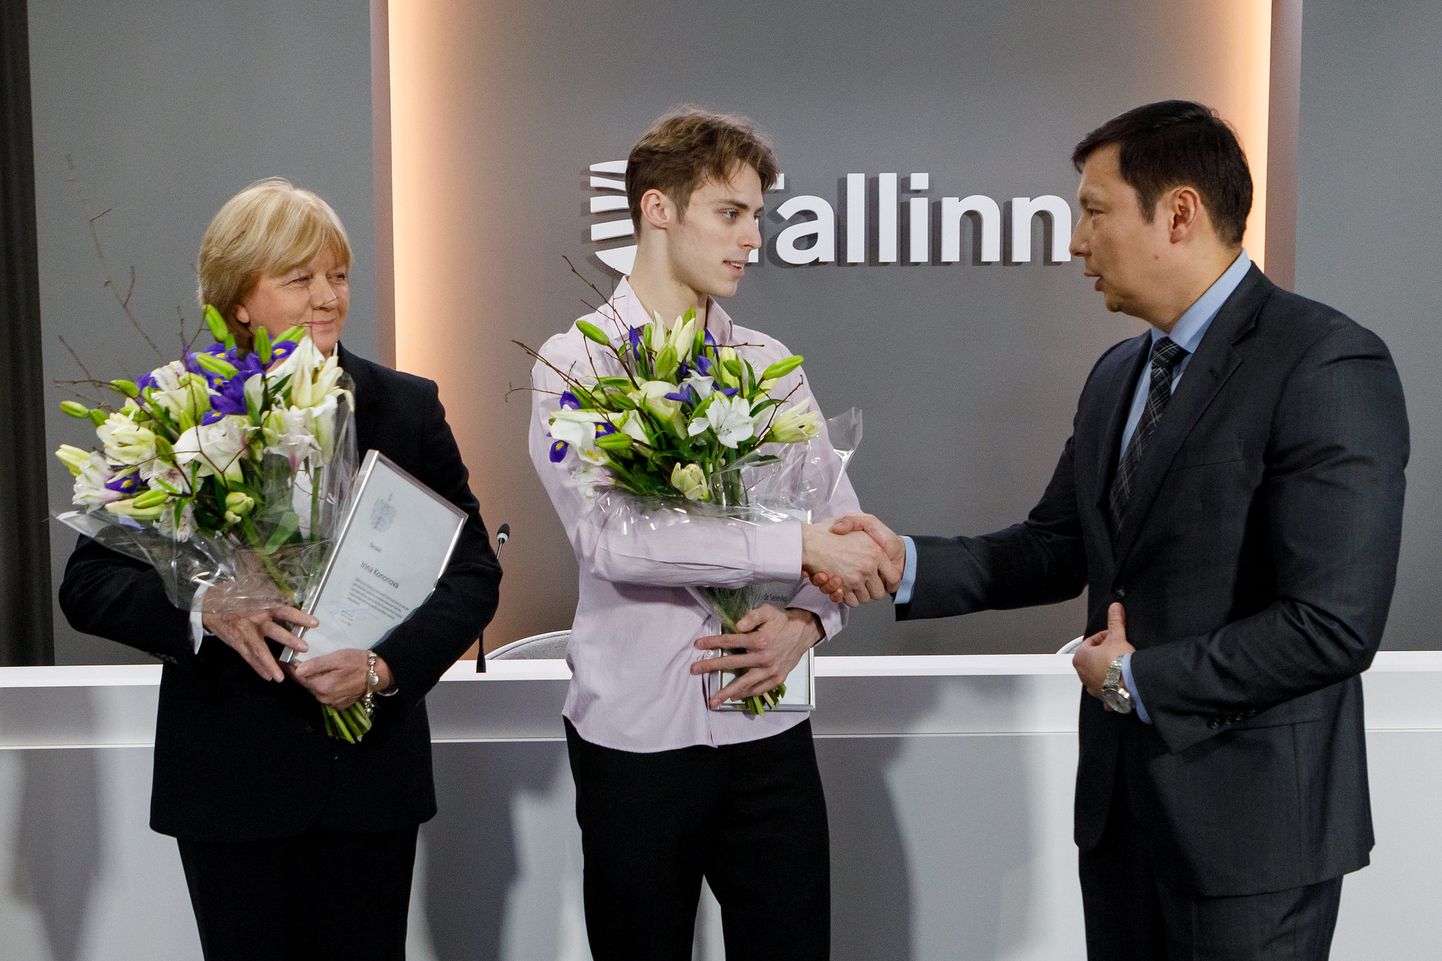 Фигуристу Александру Селевко и его тренеру Ирине Кононовой сегодня вручили премии от Таллинна.